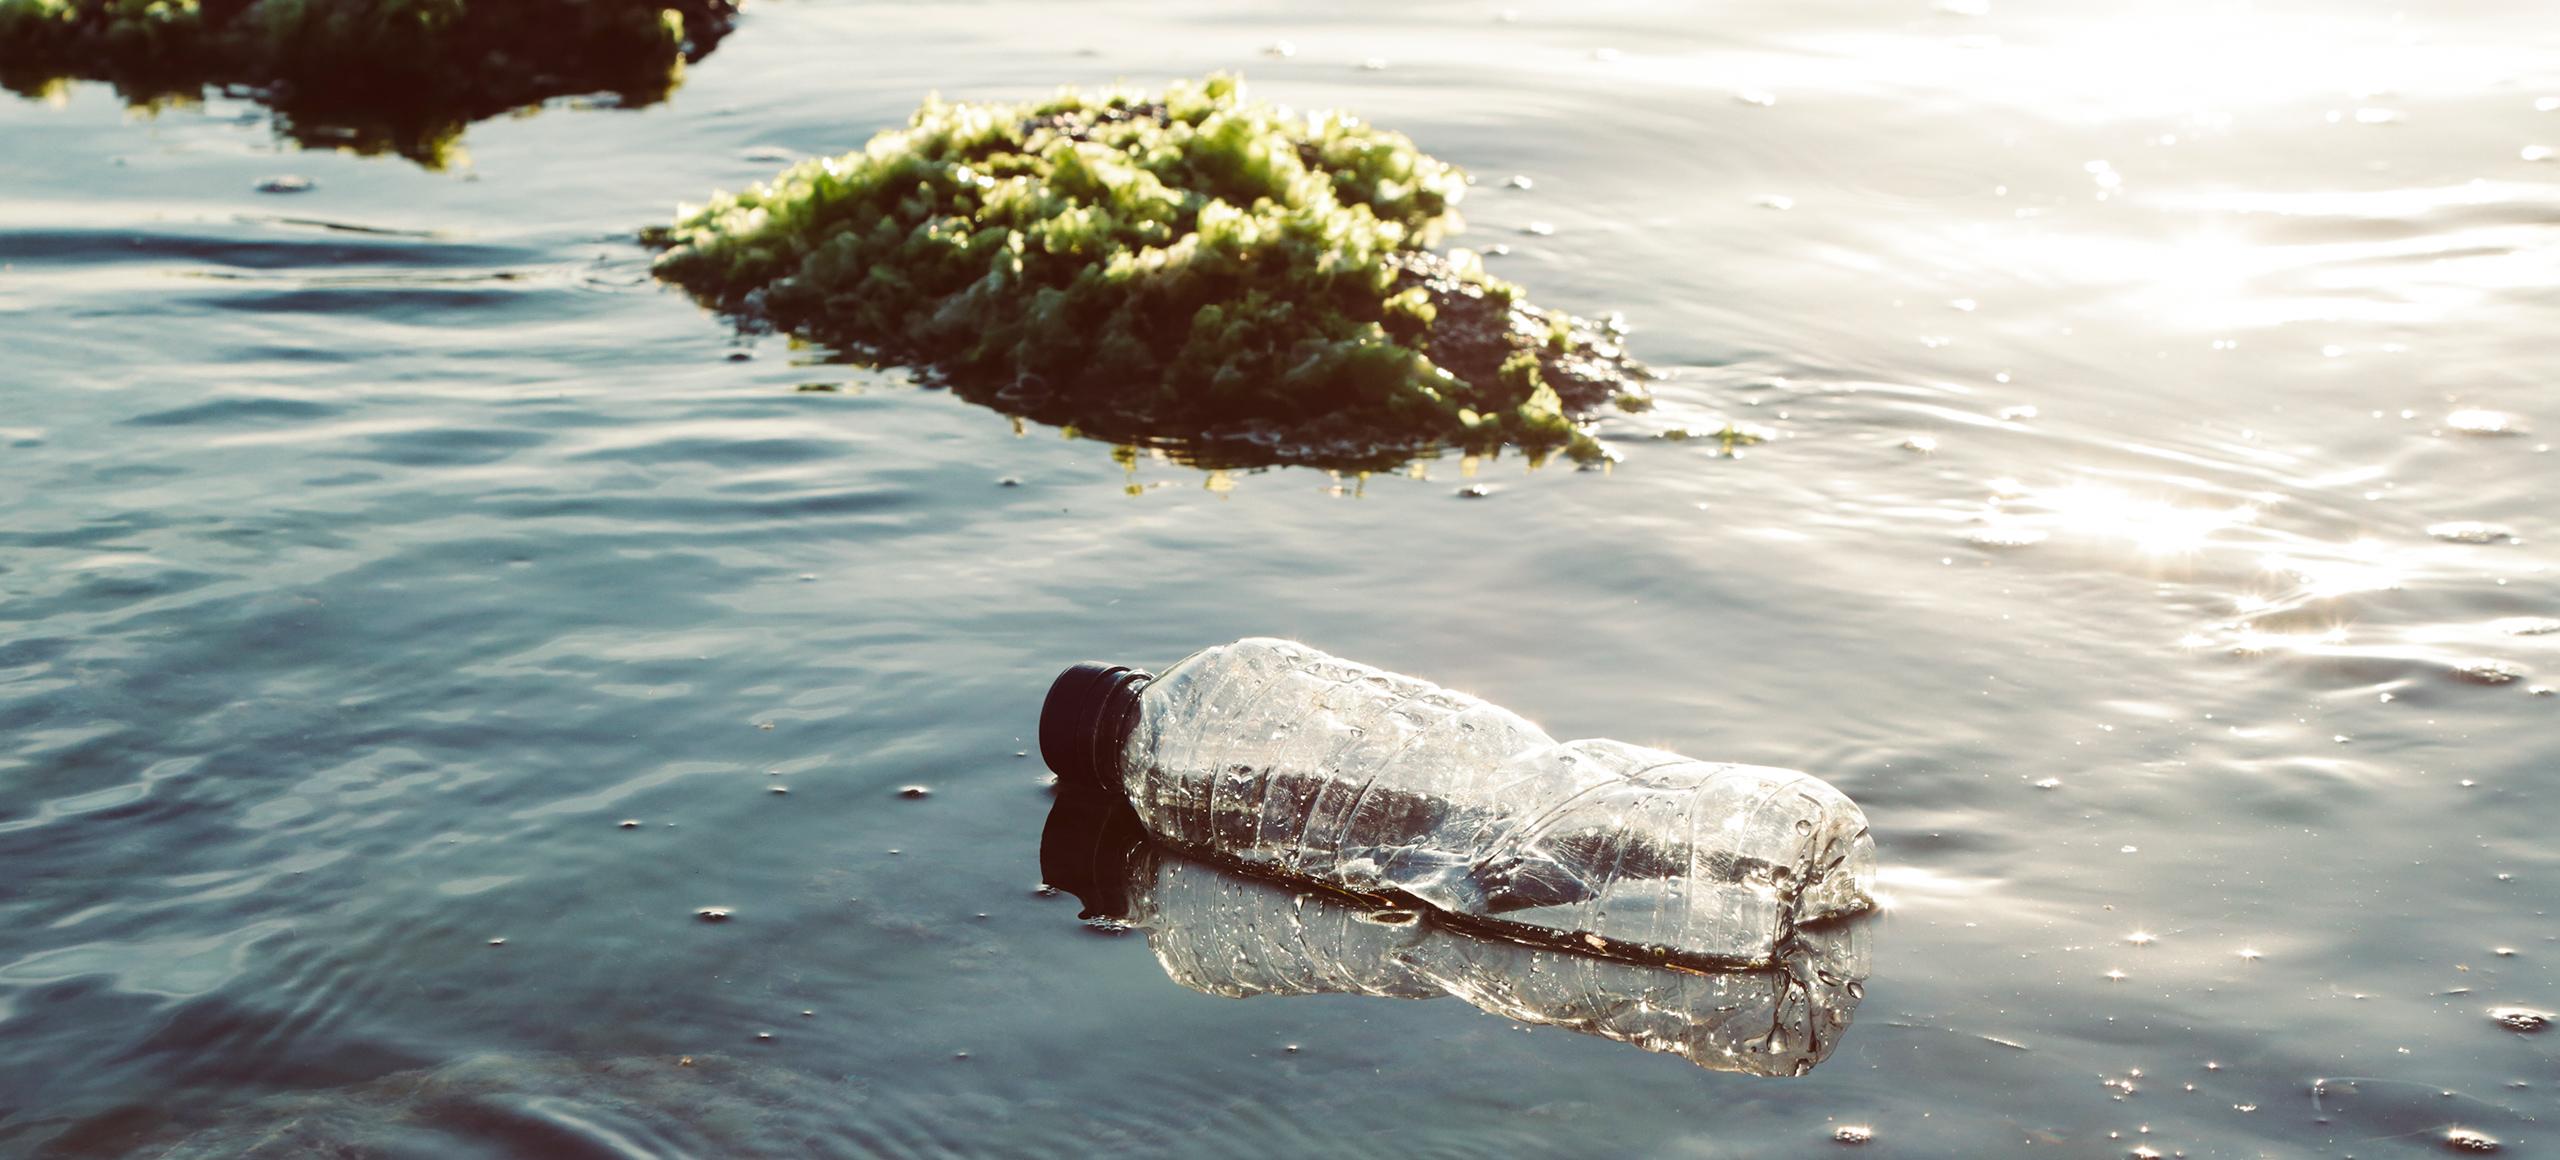 Single-use plastic bottle in ocean